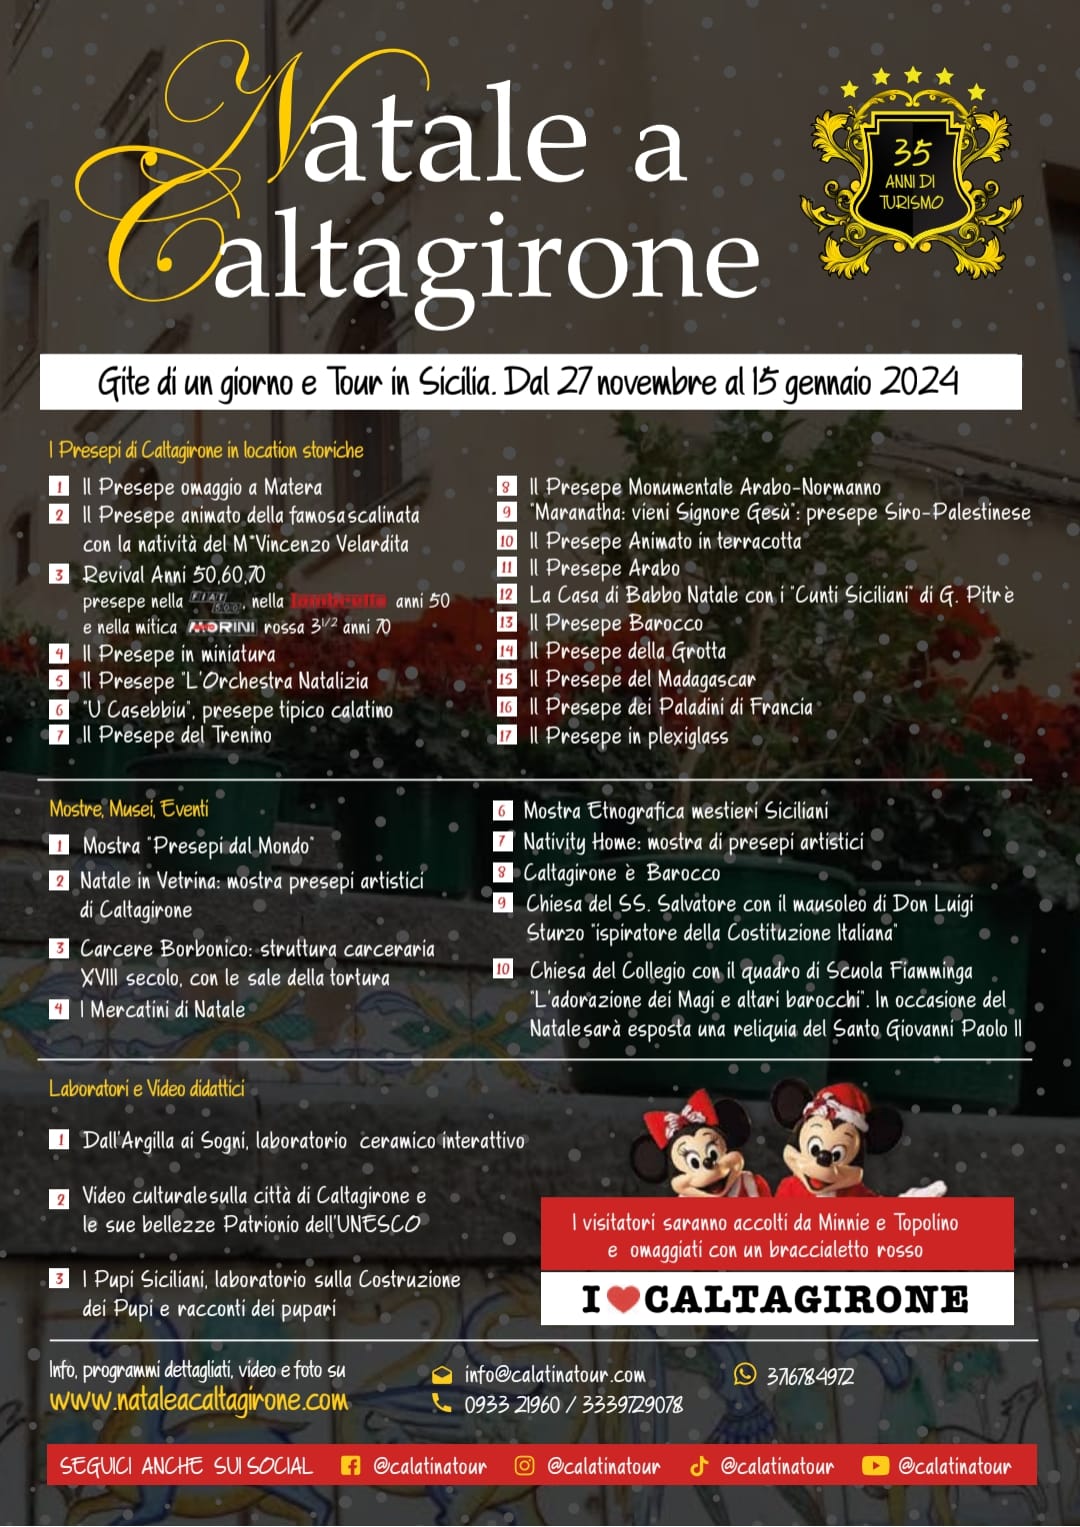 NATALE-A-CALTAGIRONE Lumina 2023: Anteprima delle Festività Natalizie a Caltagirone